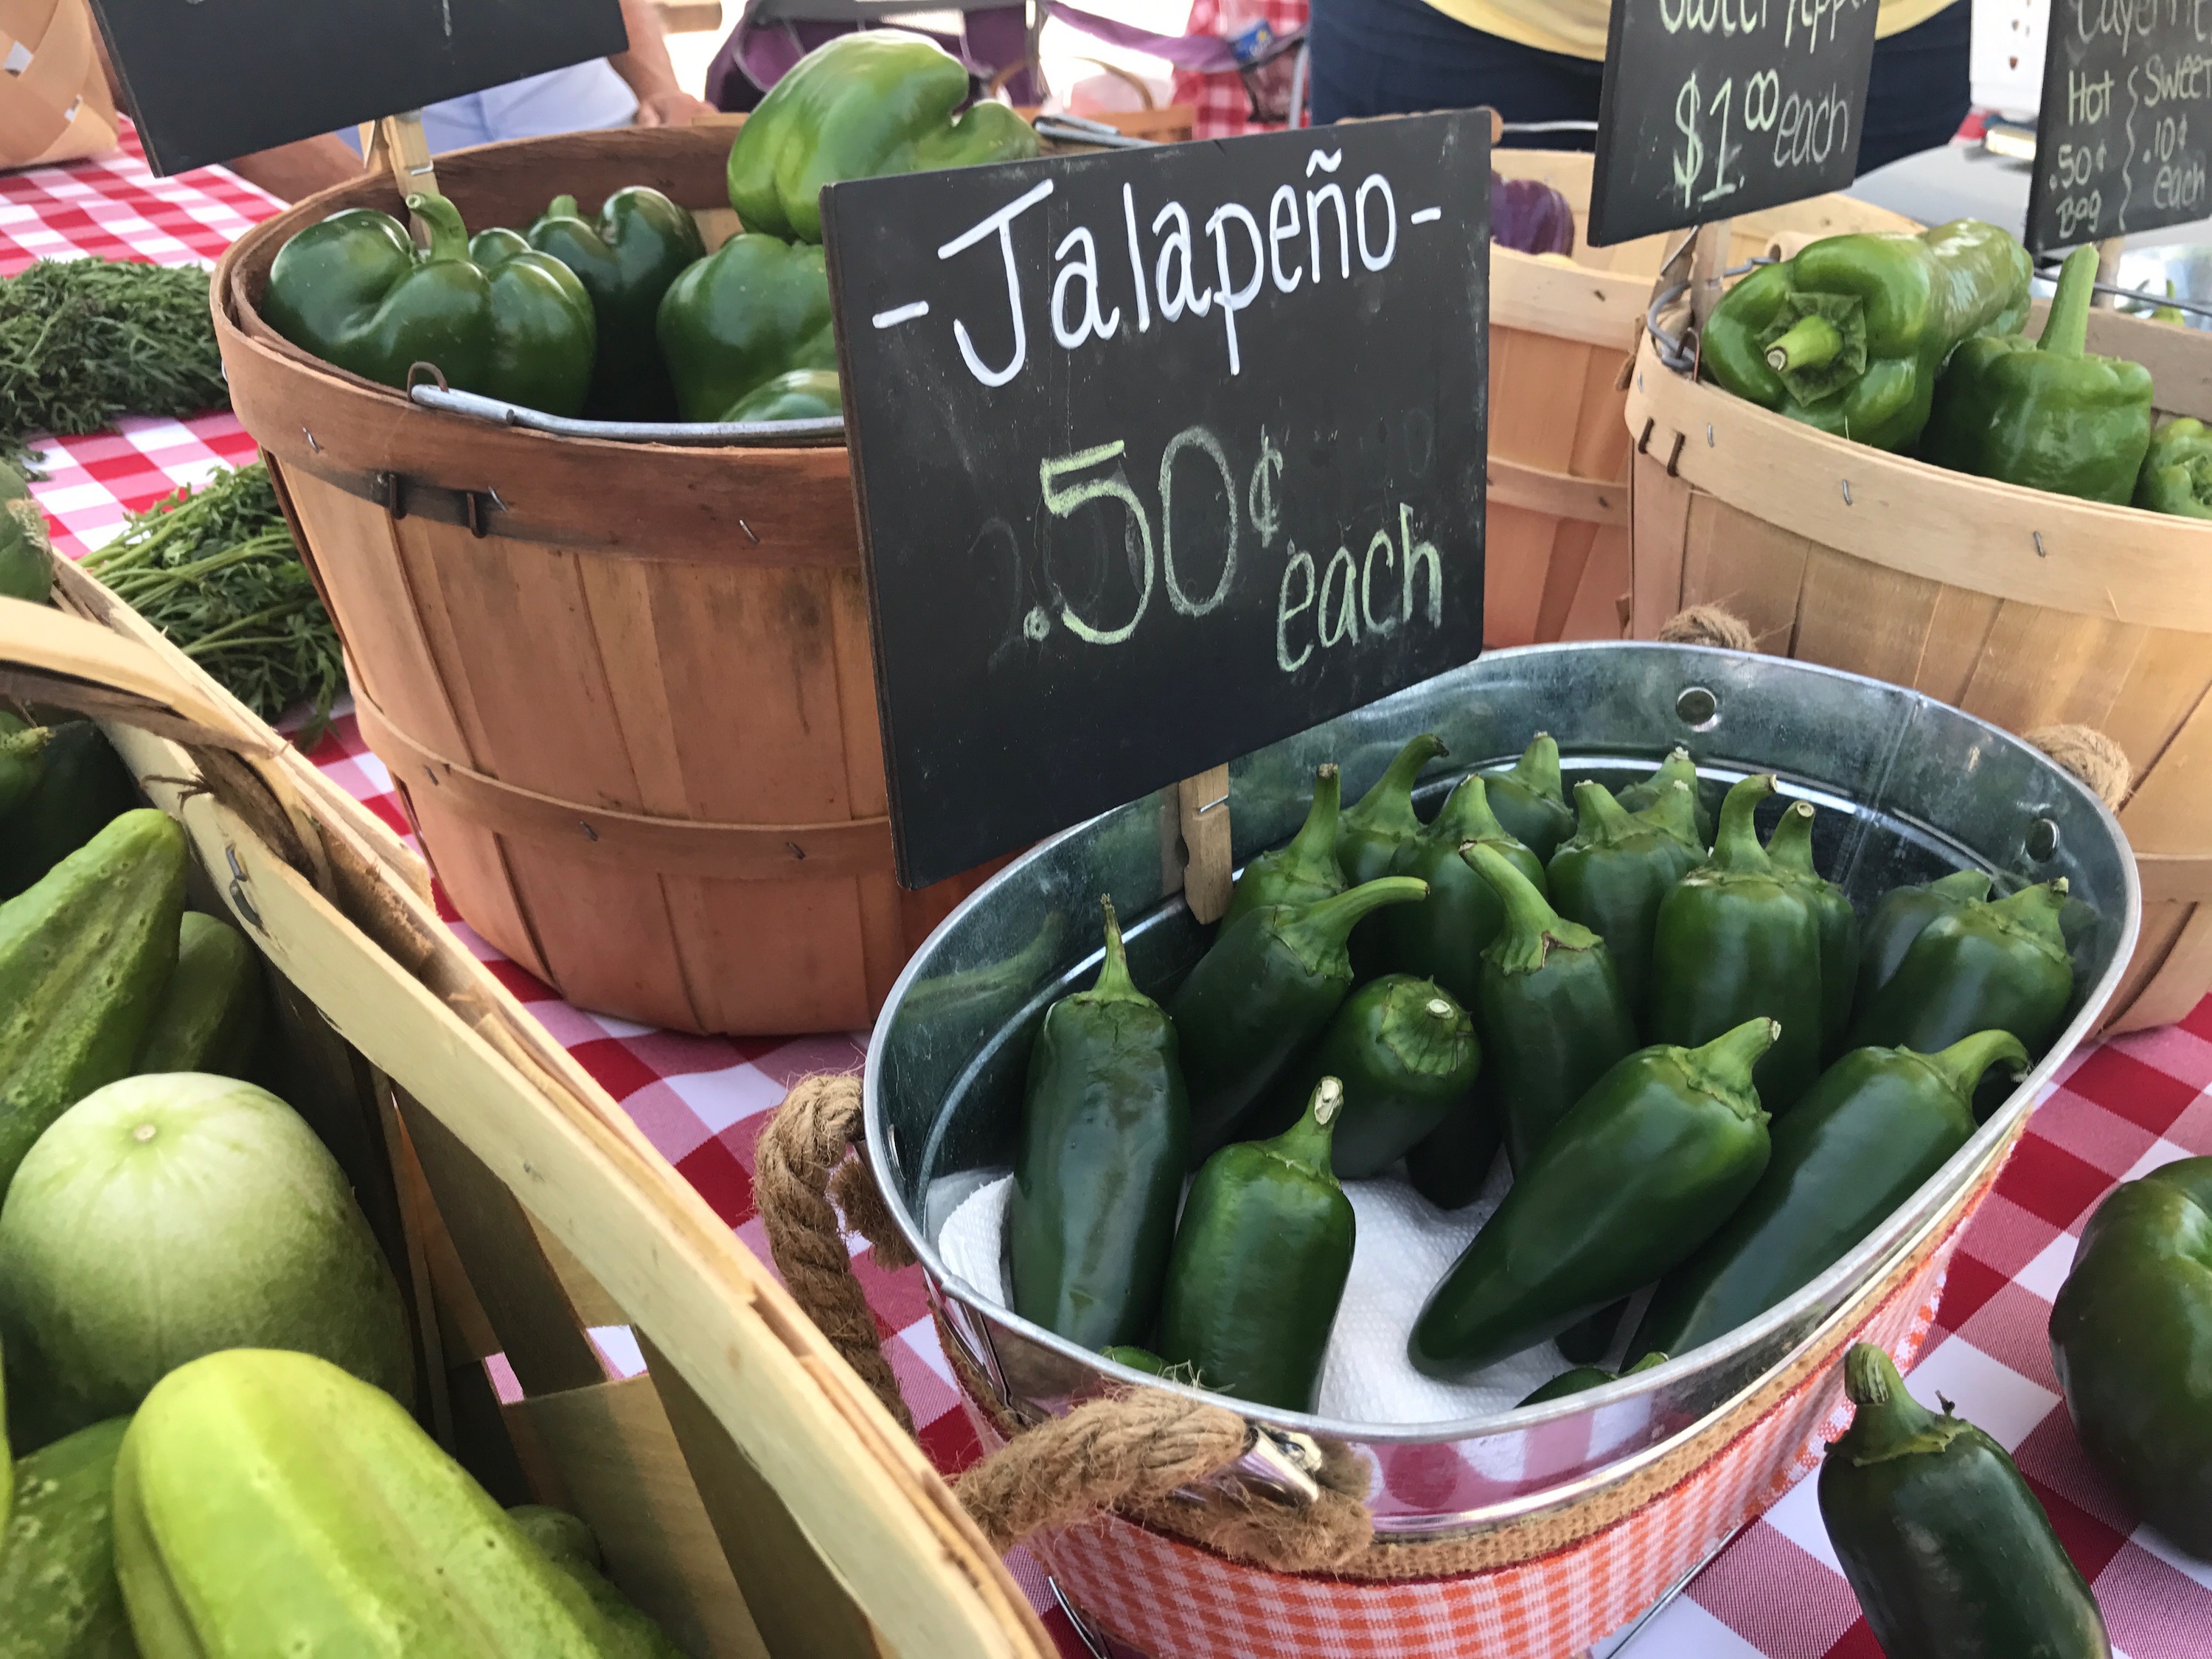 Local, Farm-Fresh Produce for the Summer